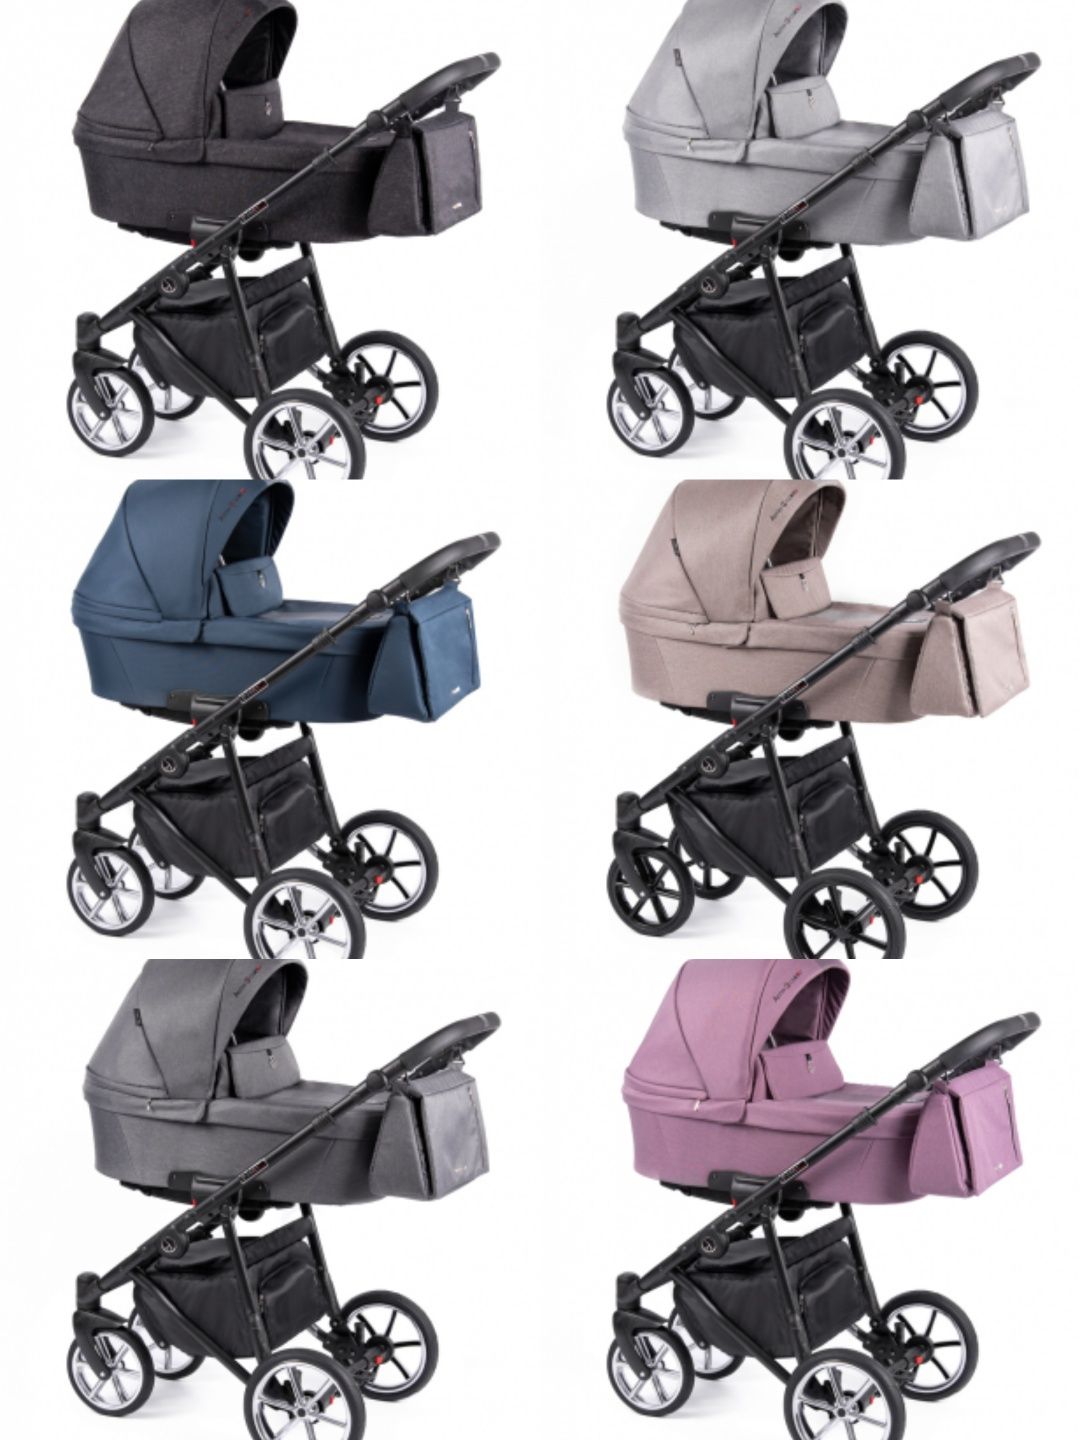 NOWY! Coletto Astin 2021 wózek wielofunkcyjny w wielu kolorach!